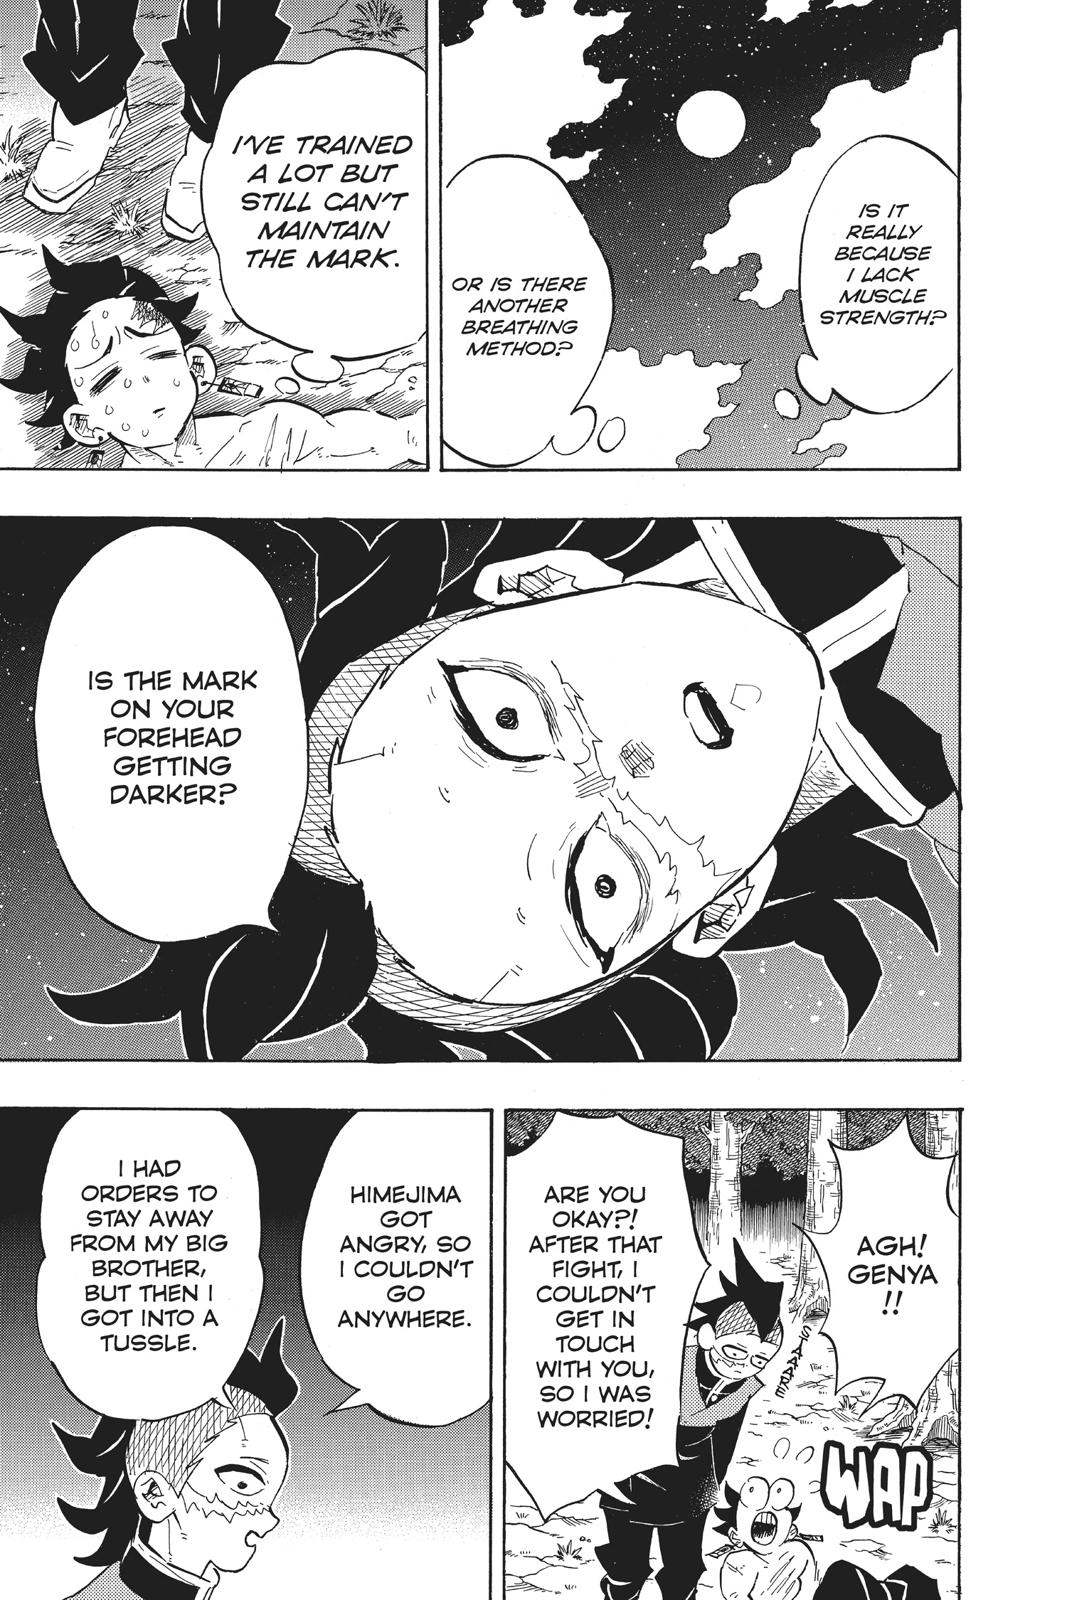 Demon Slayer Manga Manga Chapter - 134 - image 13